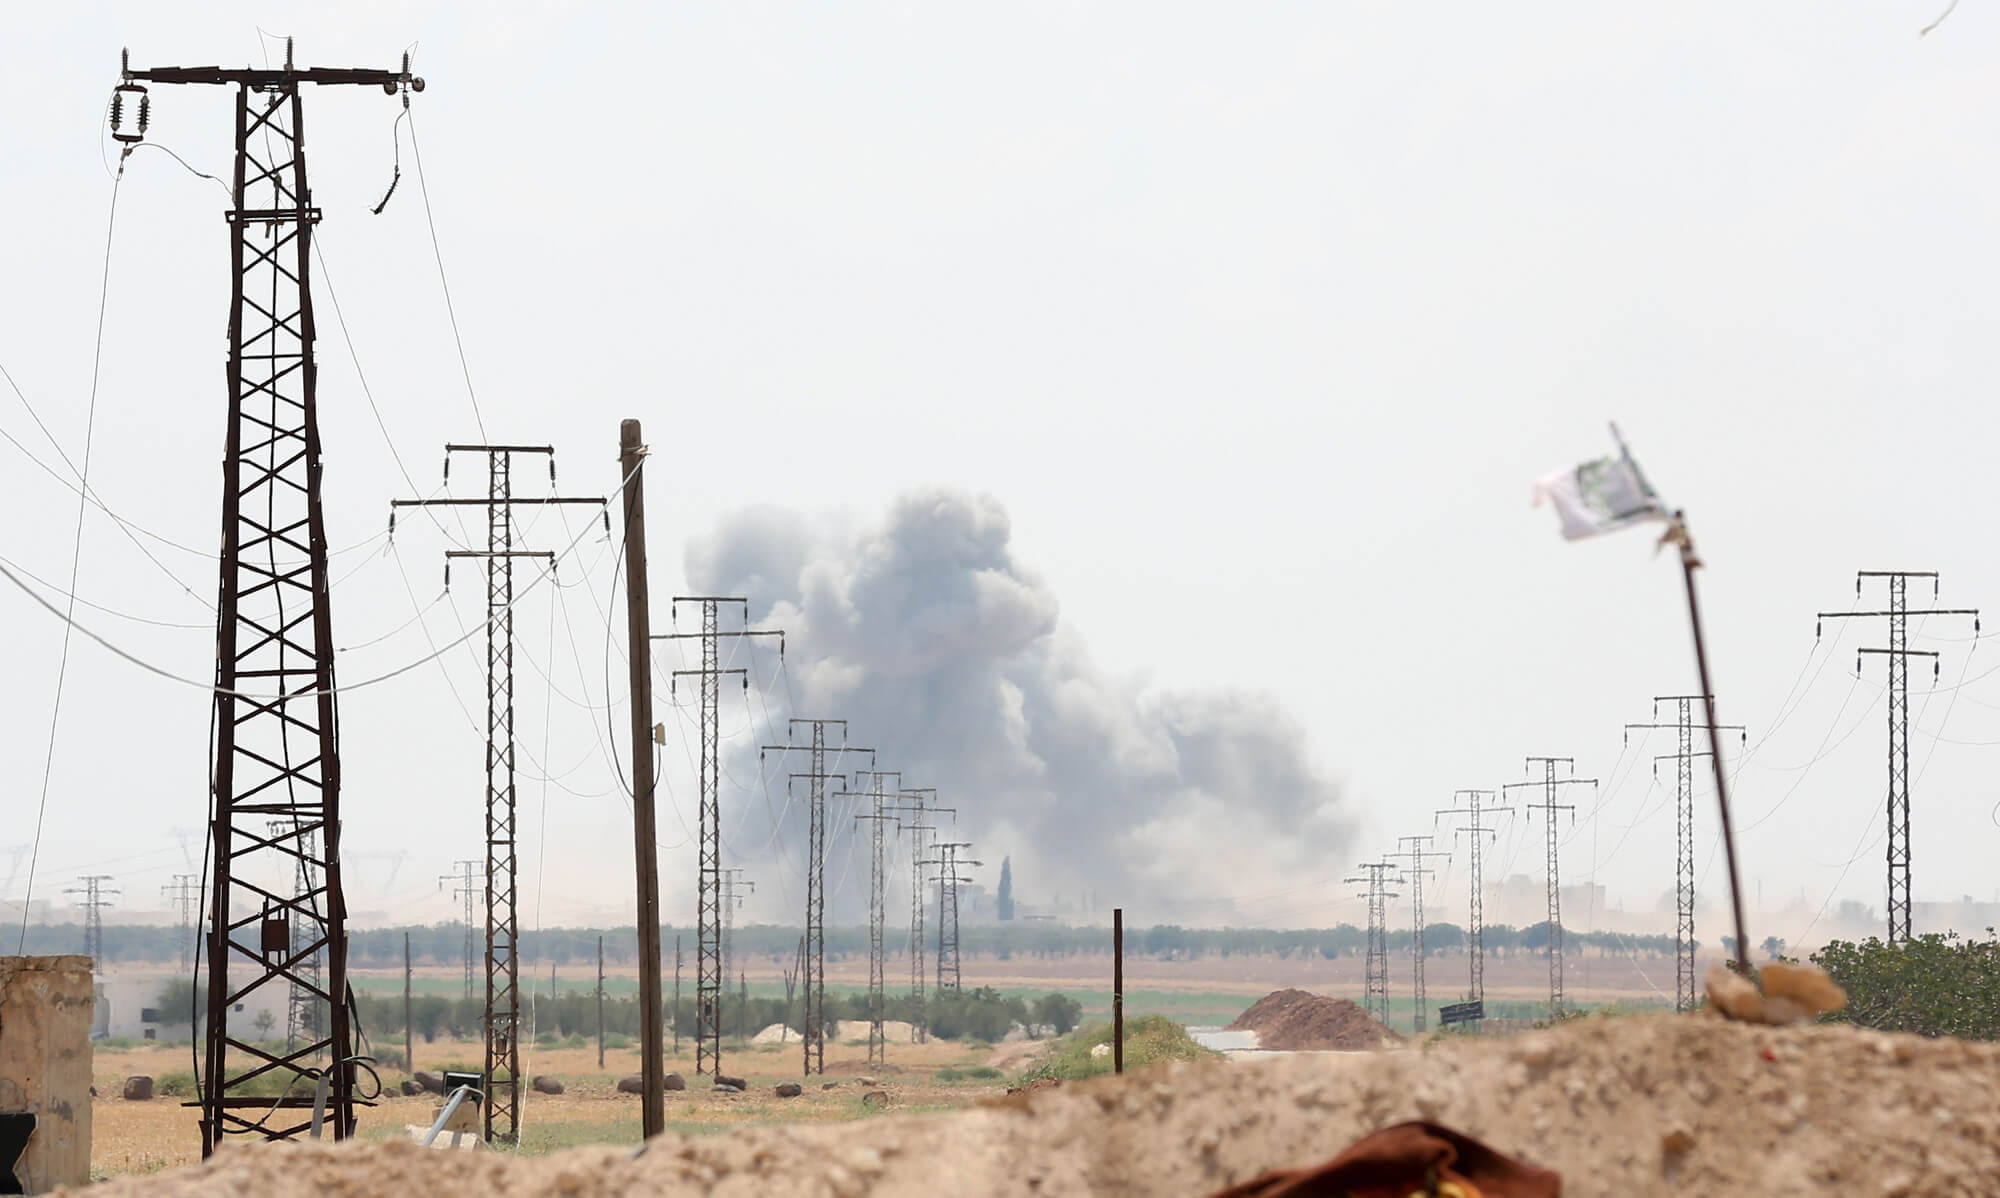 IŞİD Türk Tanklarına Saldırdı: 2 Asker Şehit oldu